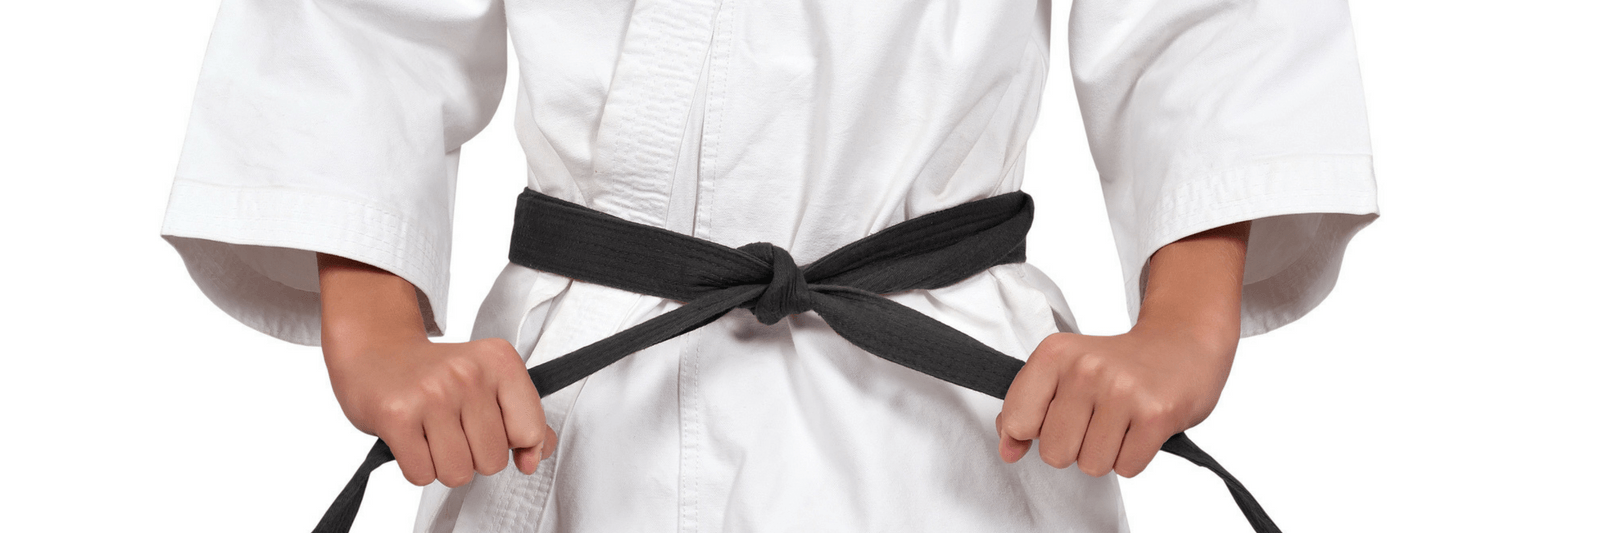 How to become a gift ninja